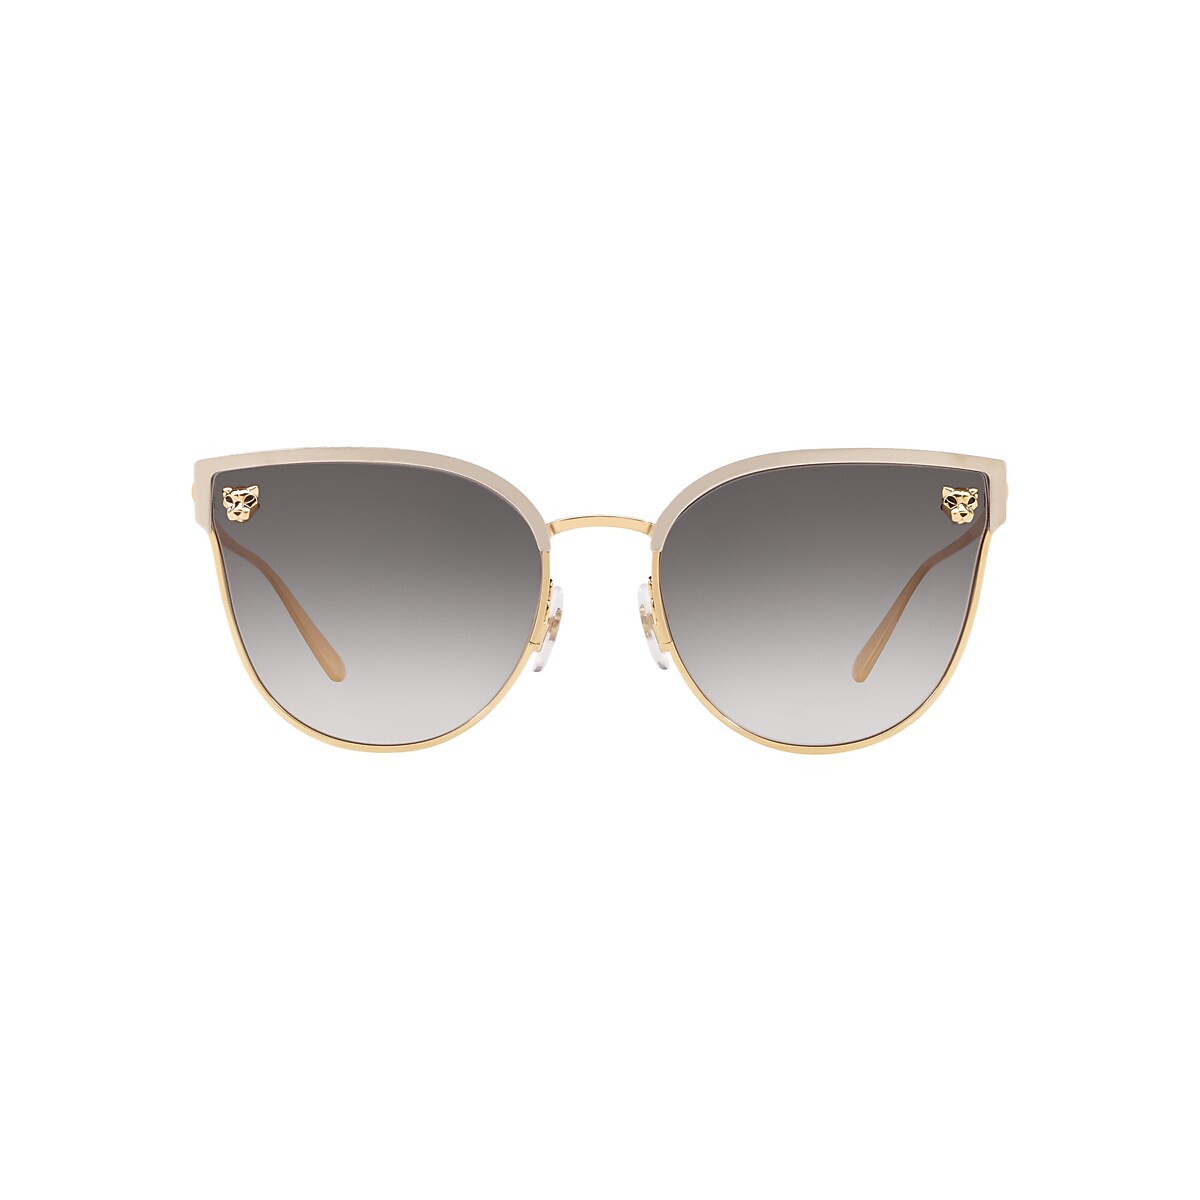 Cartier CT0198S 59 Grey Grad & Gold Shiny Sunglasses | Sunglass 